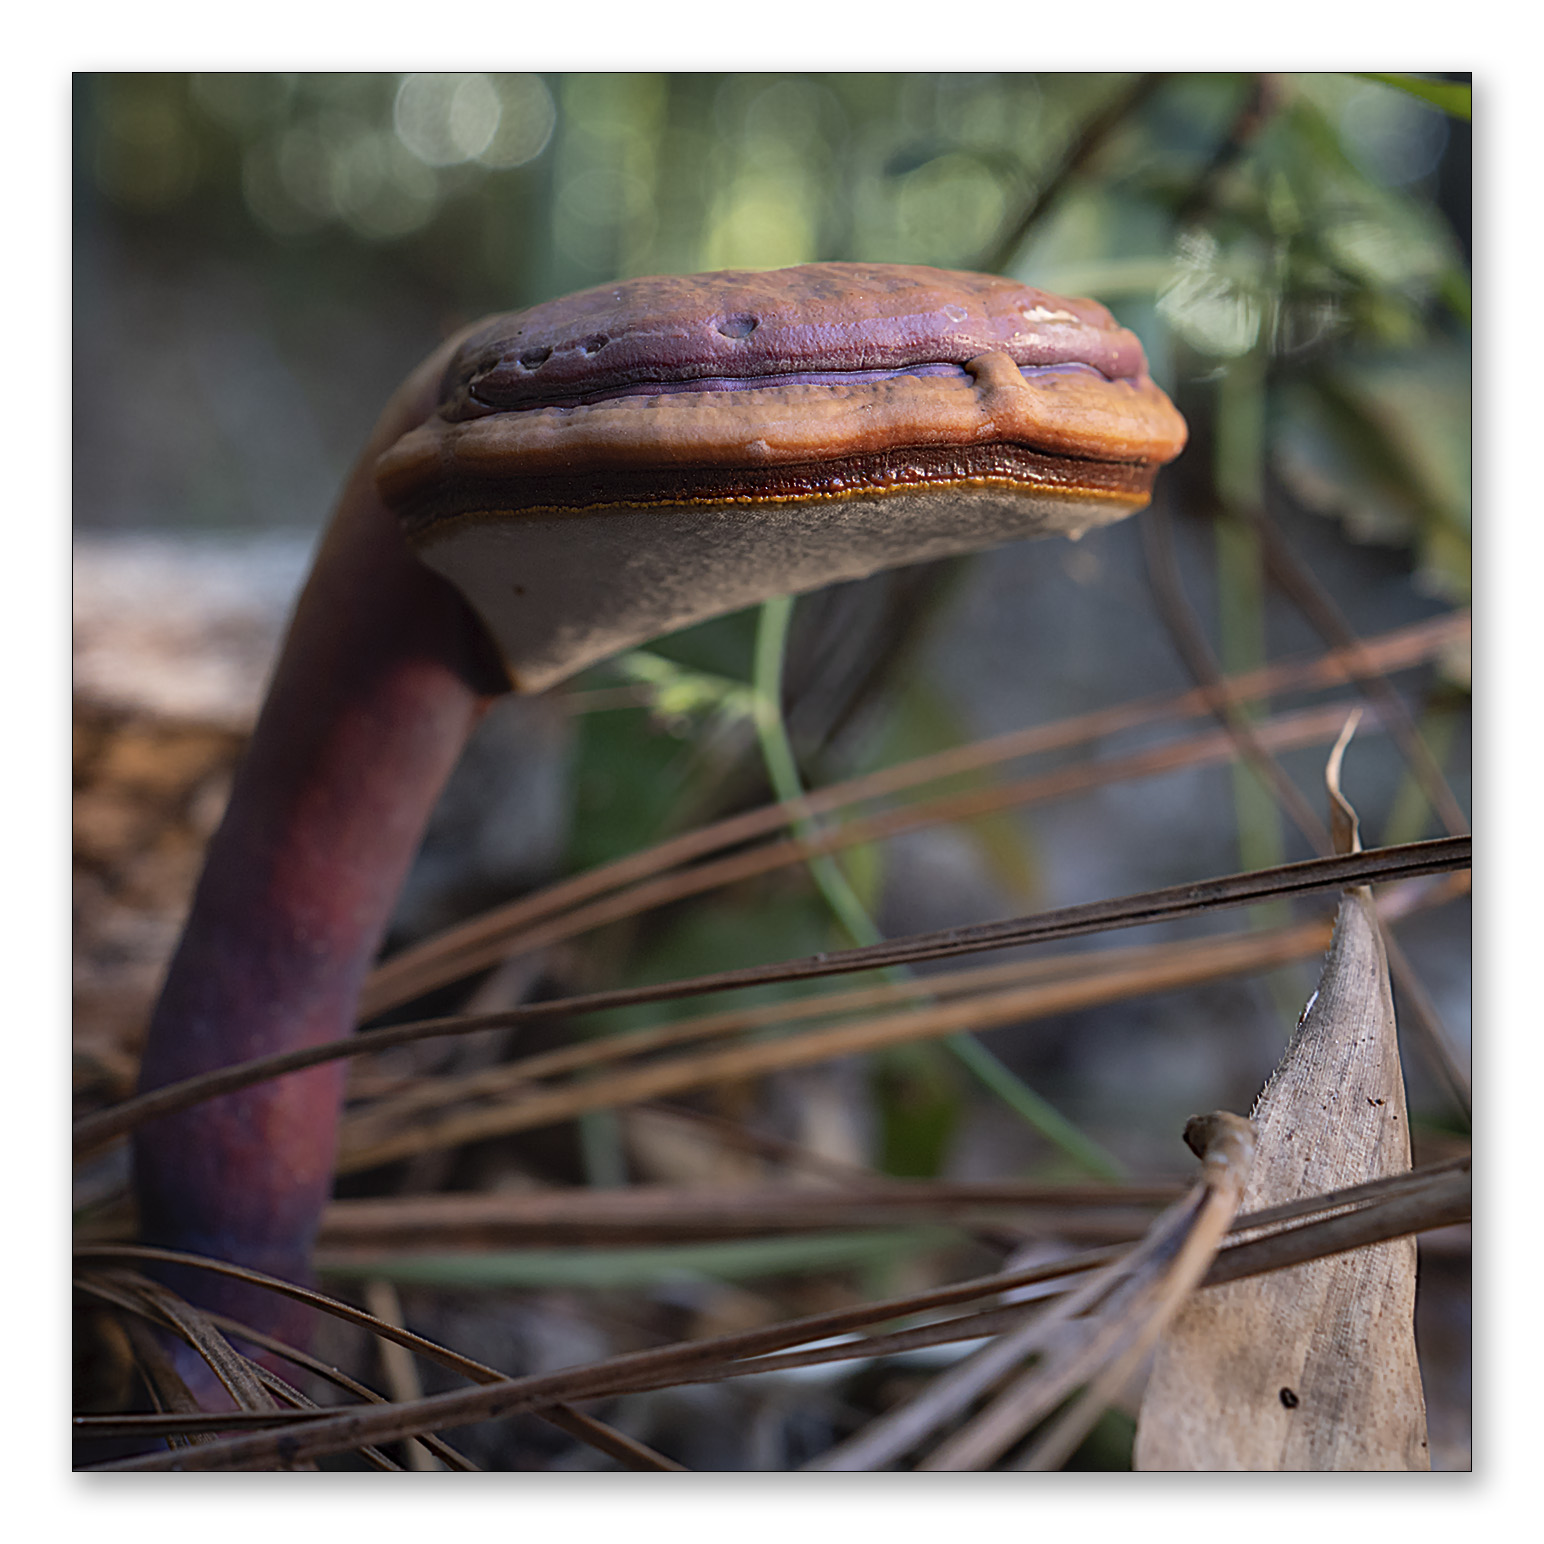 Mushroom, Snake or Alien?